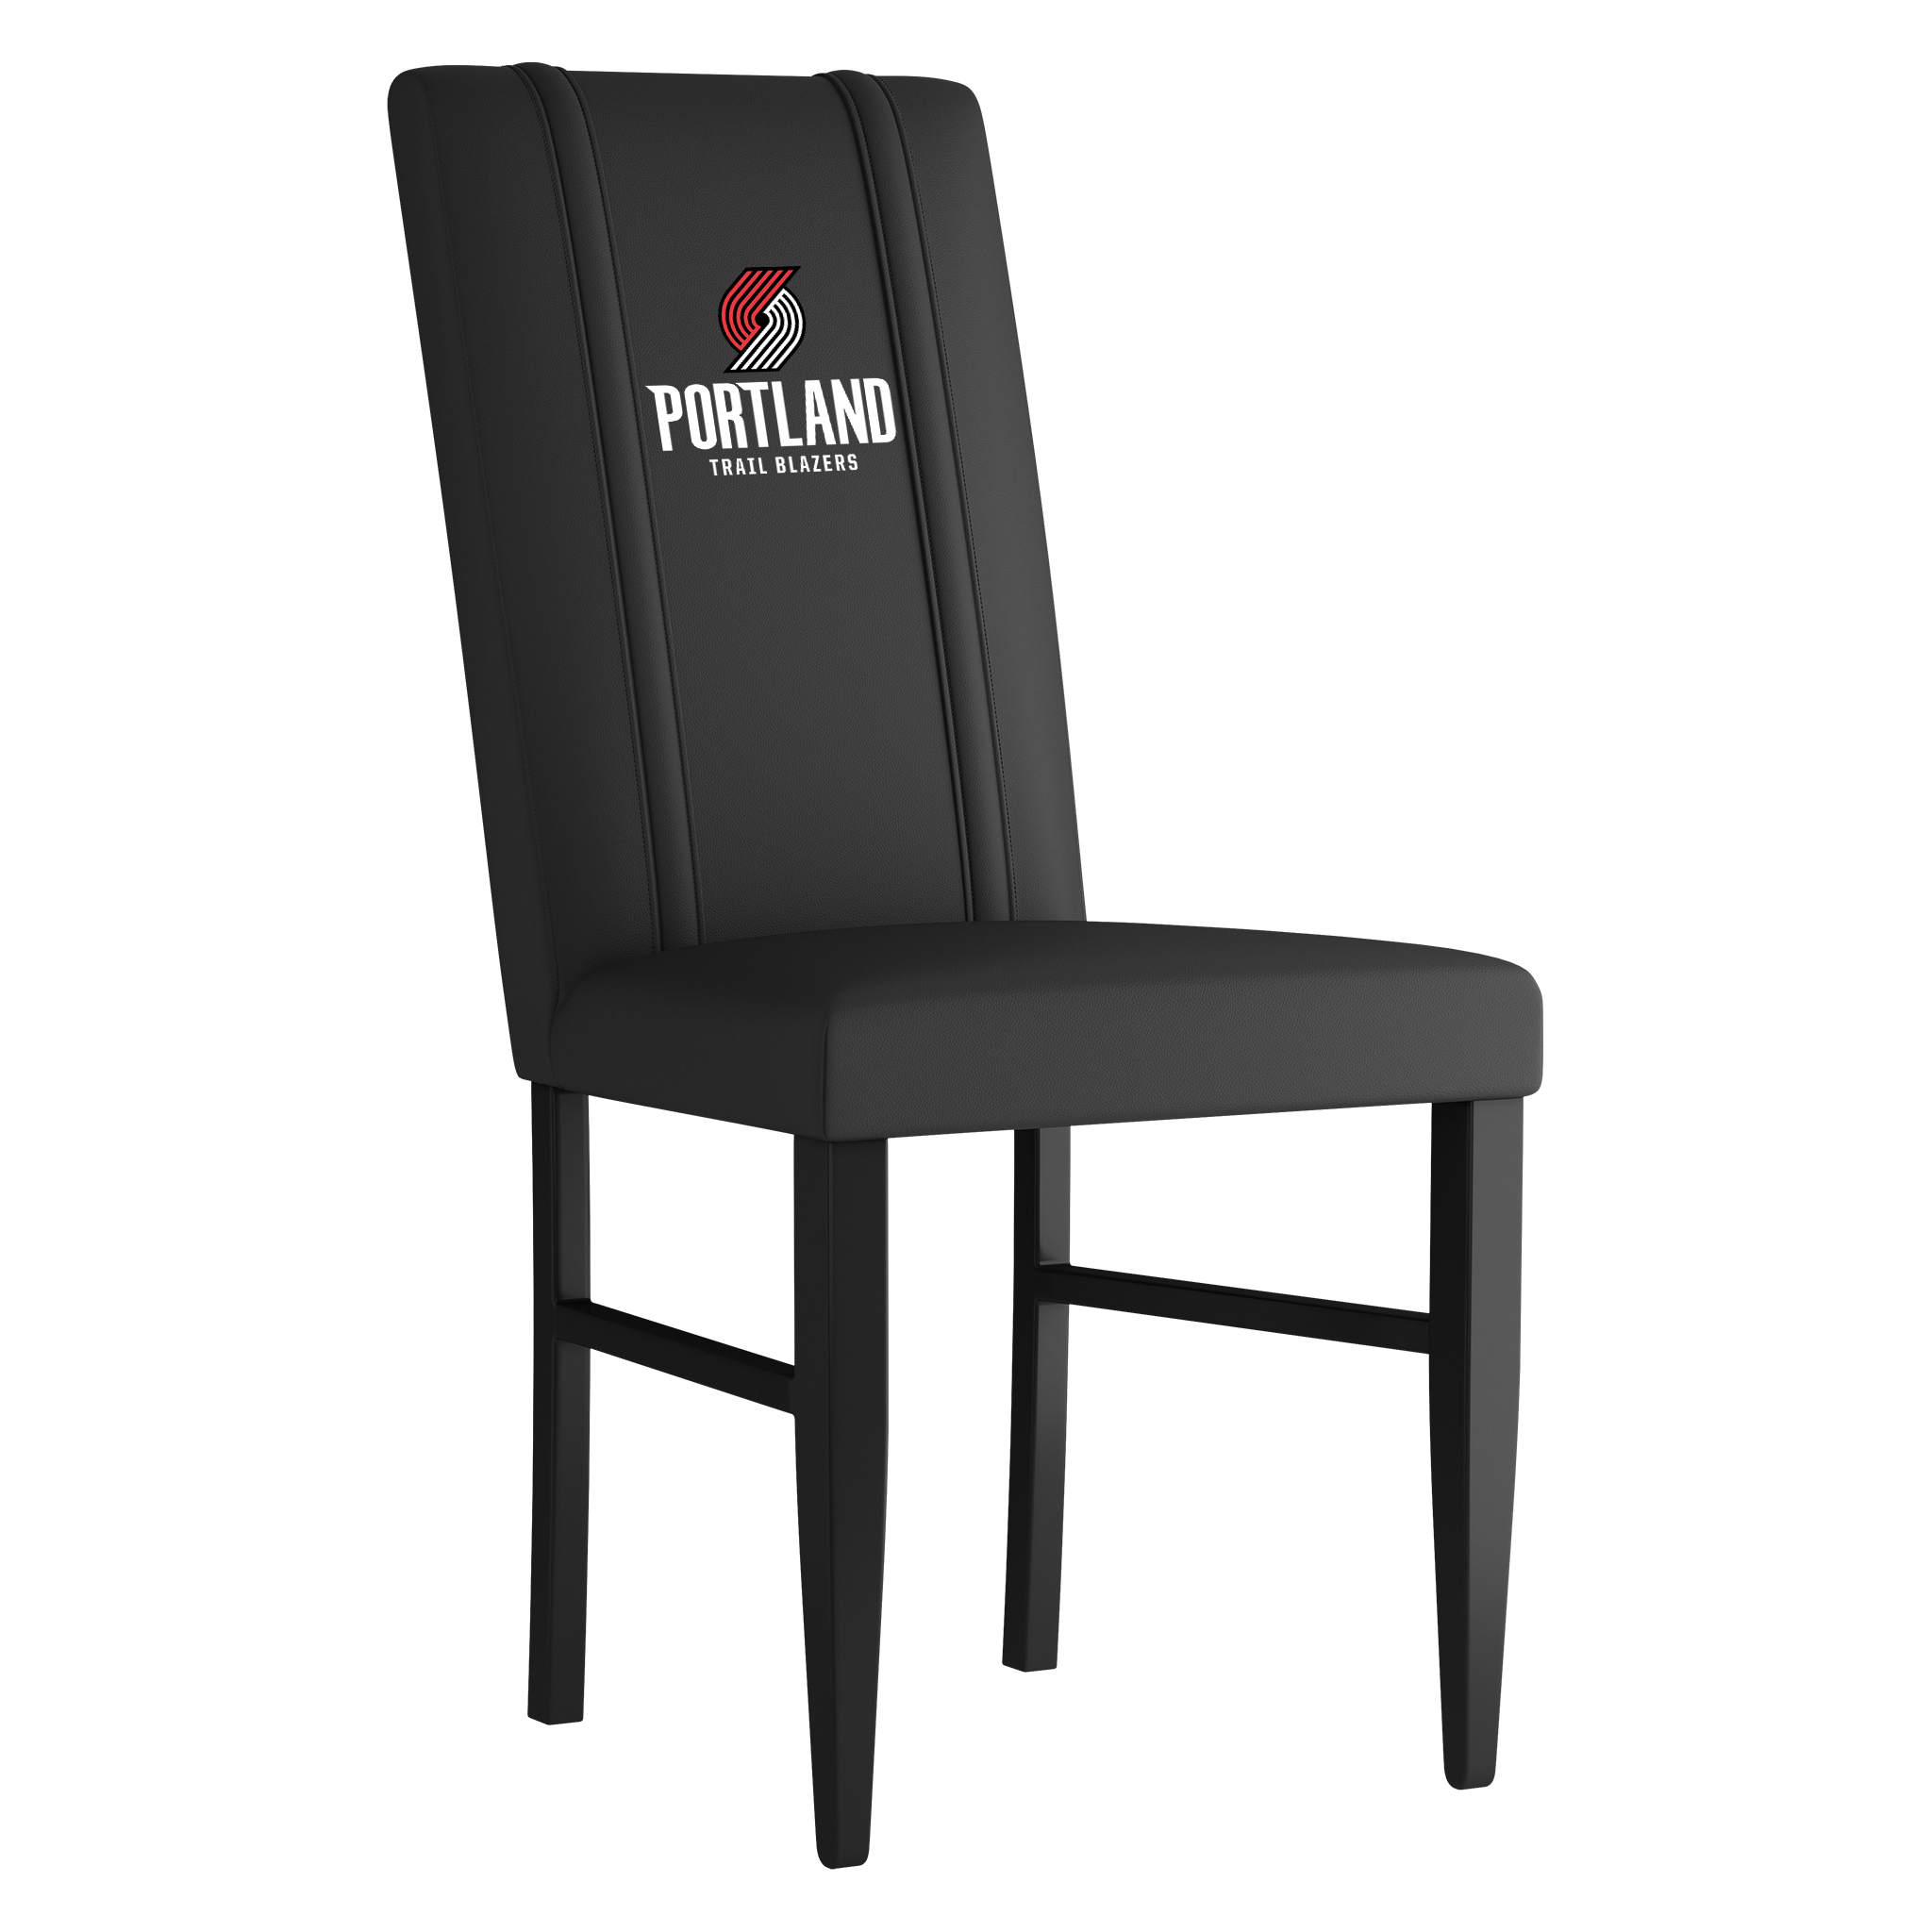 Portland Trailblazers Side Chair 2000 With Portland Trailblazers Secondary Logo